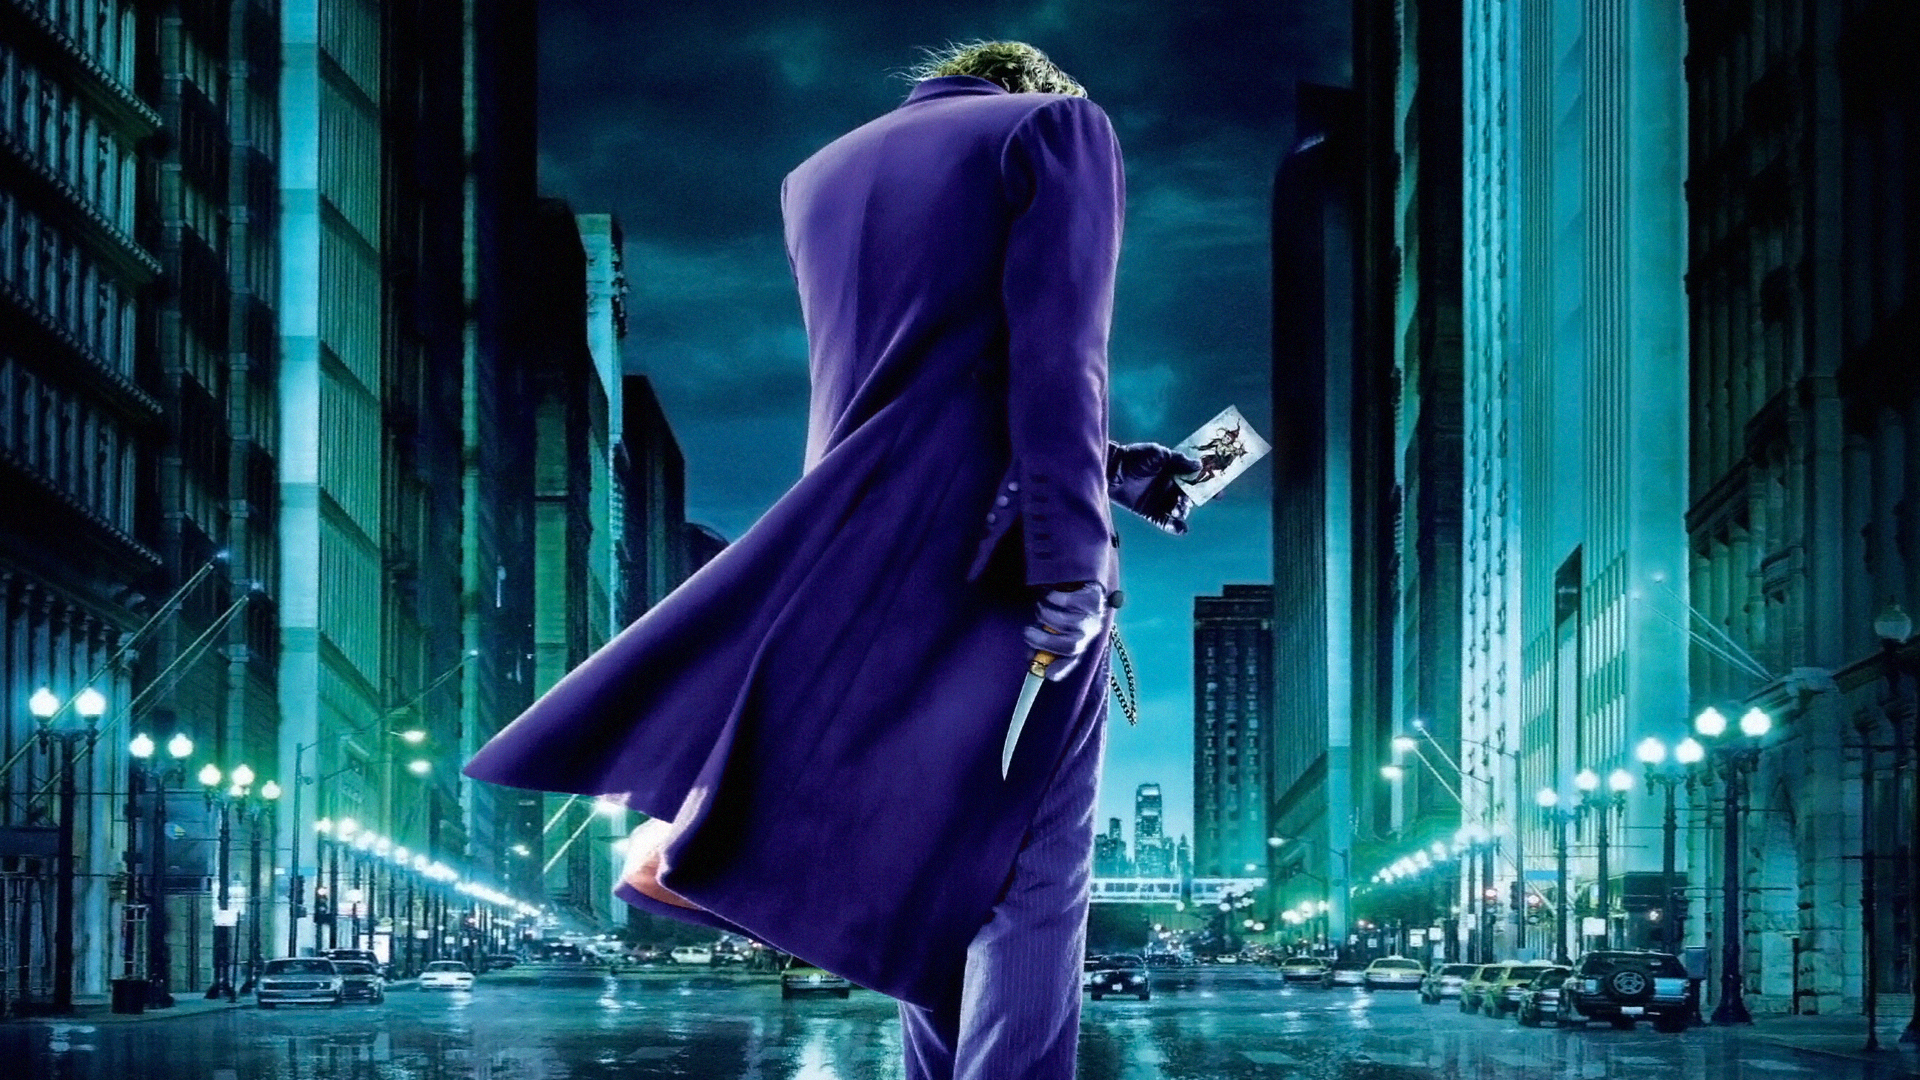 Dark Knight Joker Card | Full HD Desktop Wallpapers 1080p